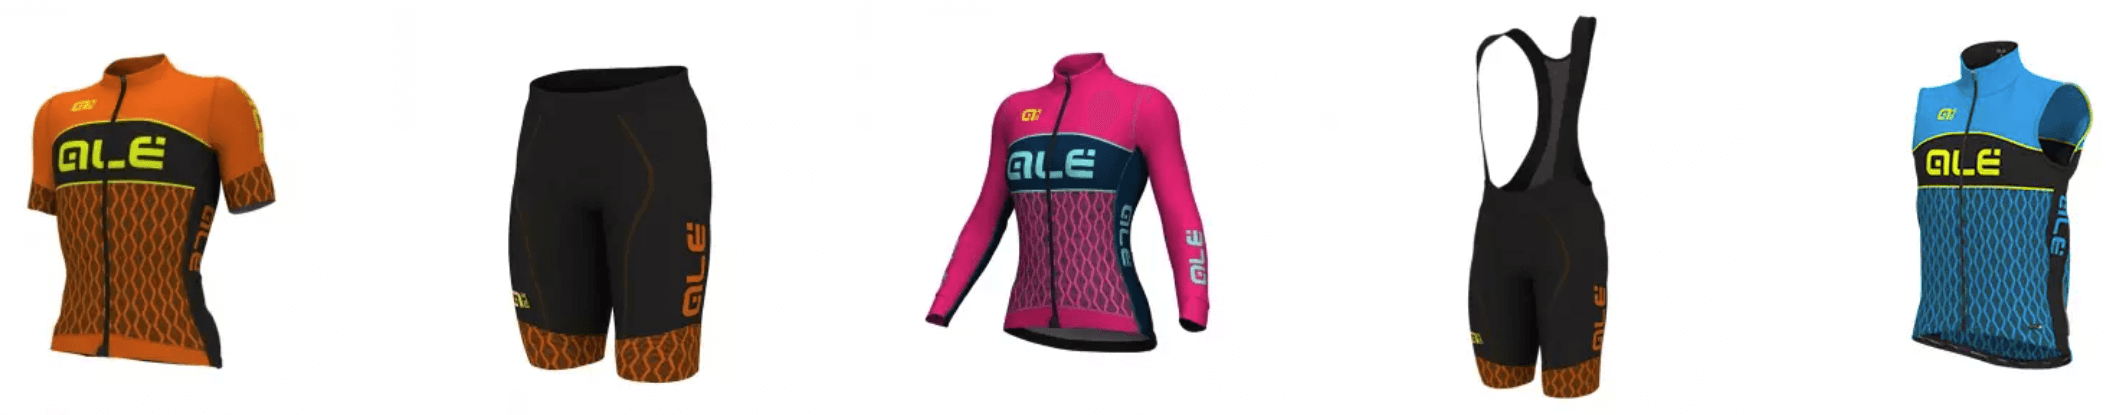 Cykelklub tøj fra ALÈ